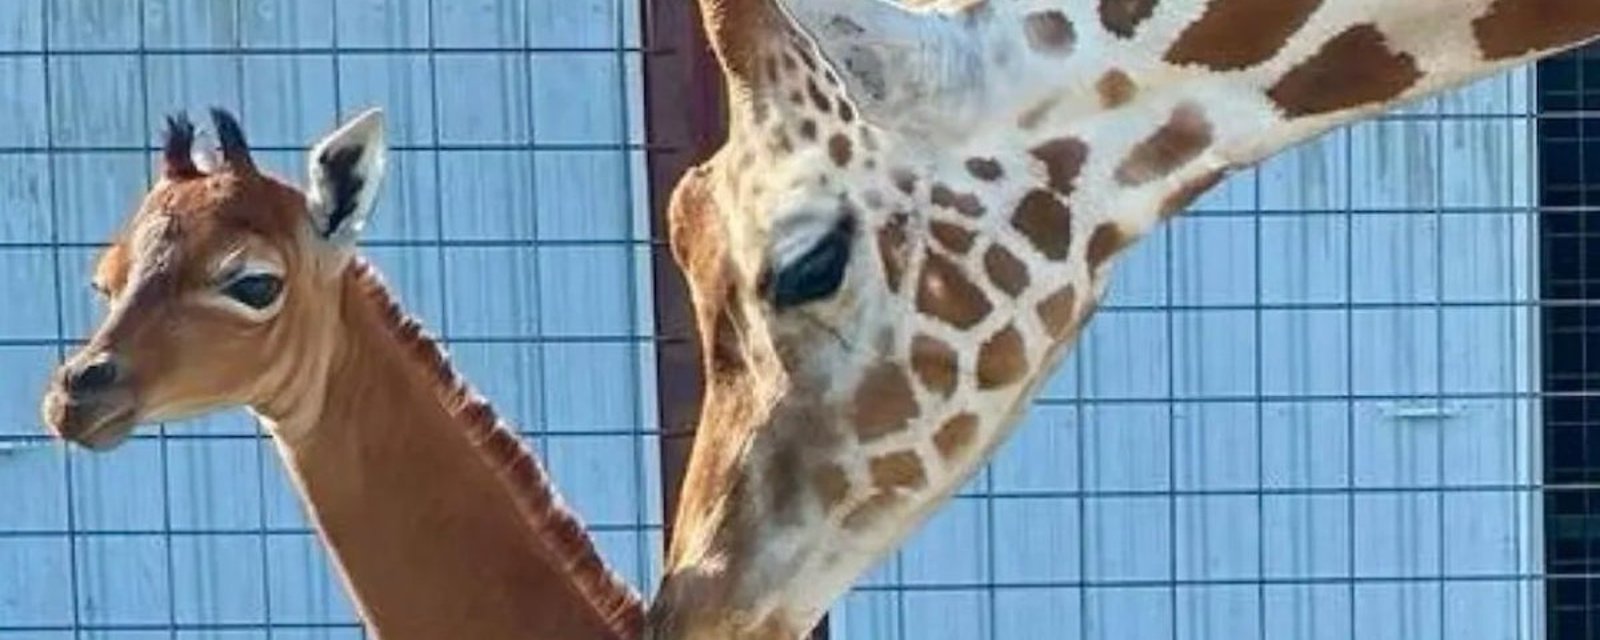 Première mondiale: une girafe est née sans taches